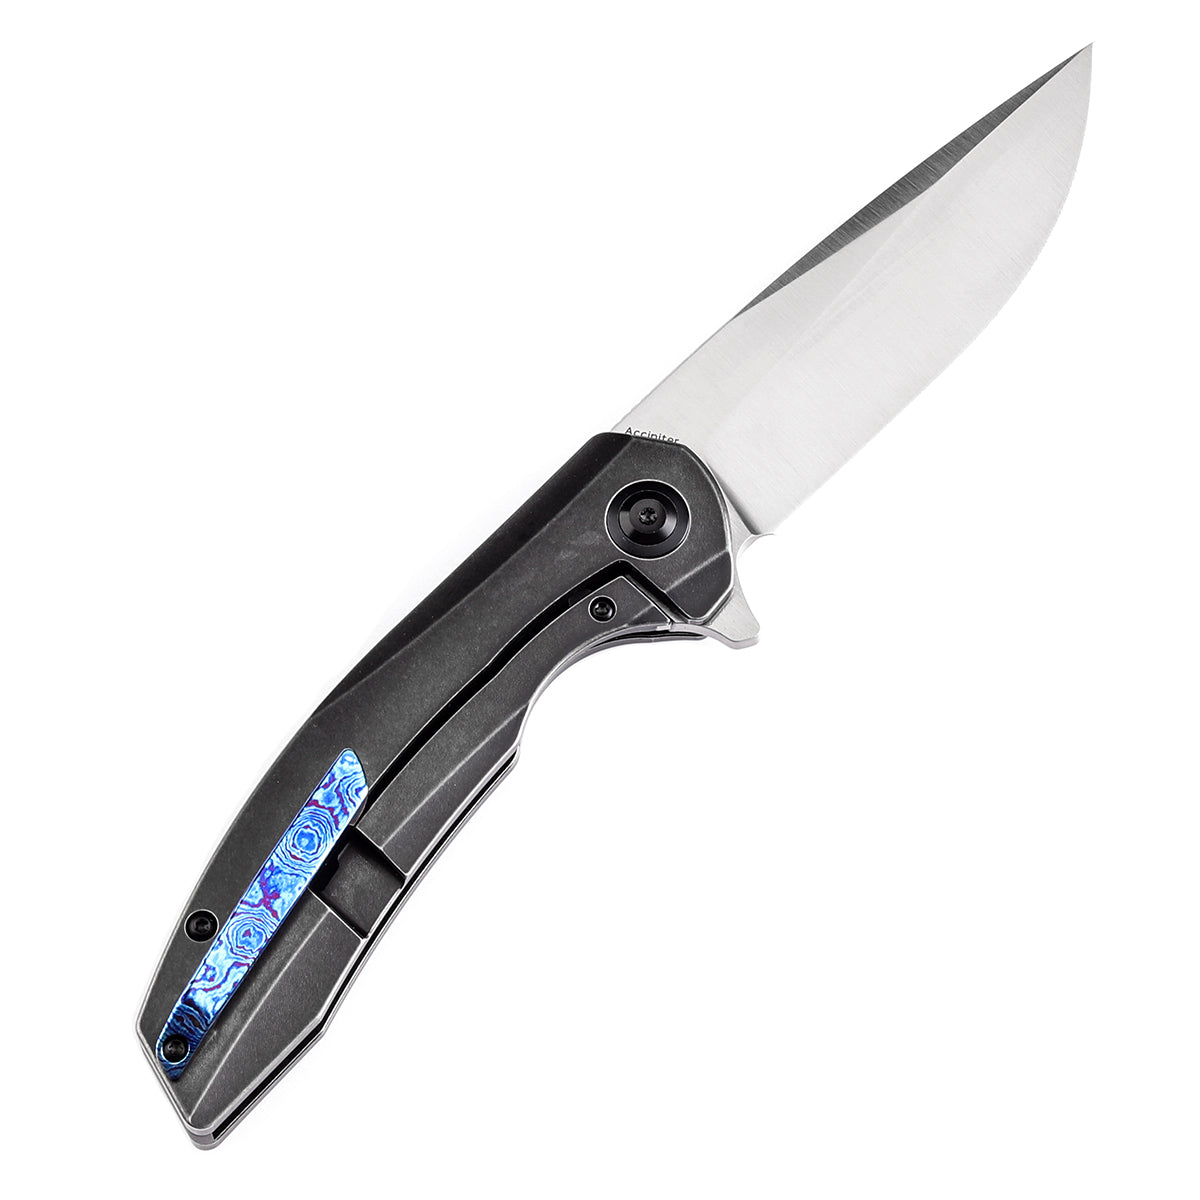 Kansept Accipiter Flipper Knife K1007E3 CPM S35VN Blade Timascus Handle Edc Knives